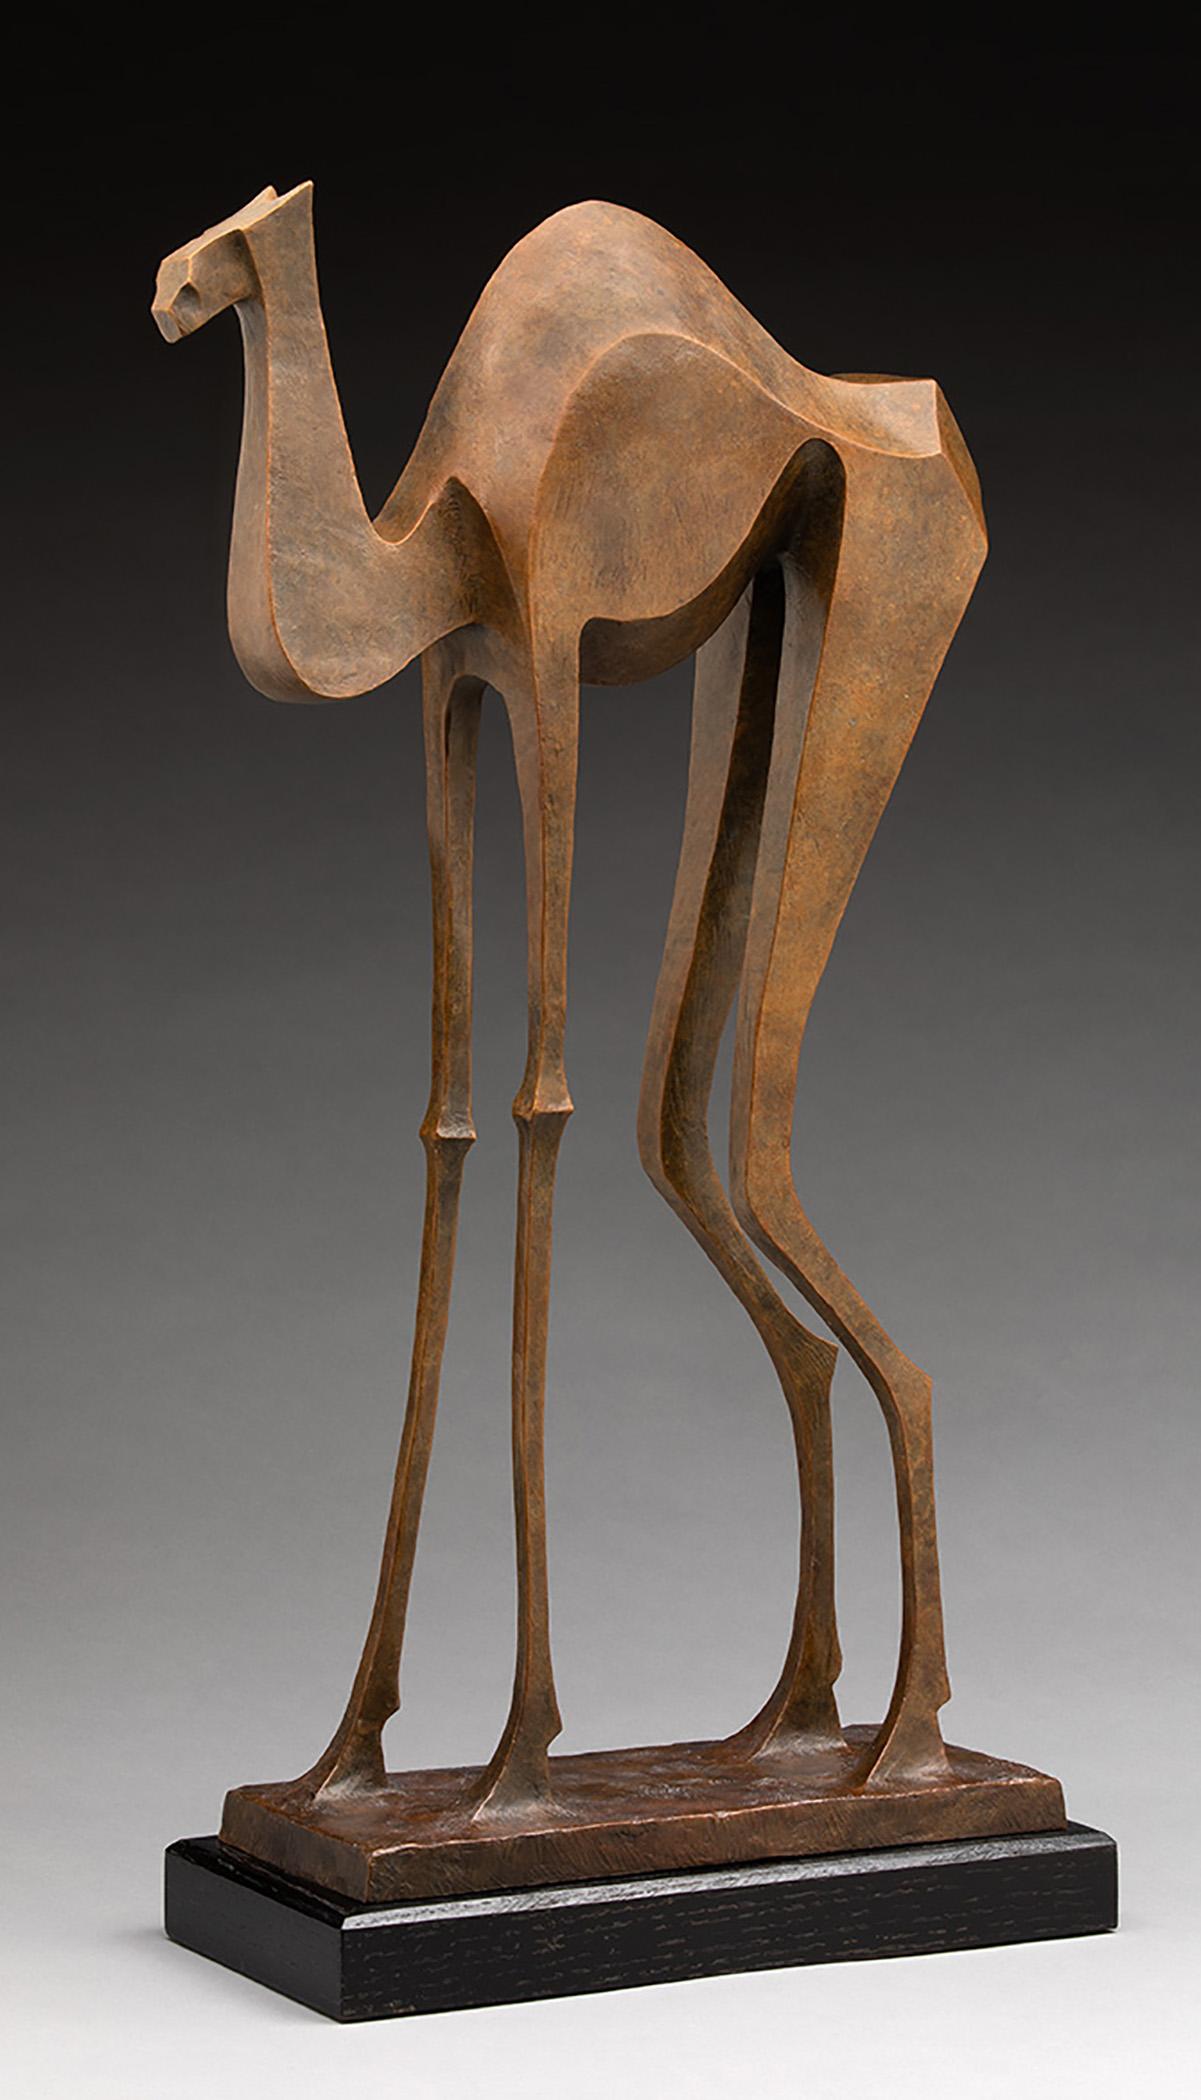 Wayne Salge Figurative Sculpture - "Jamal (2/12)" contemporary bronze interpretive sculpture of a camel 